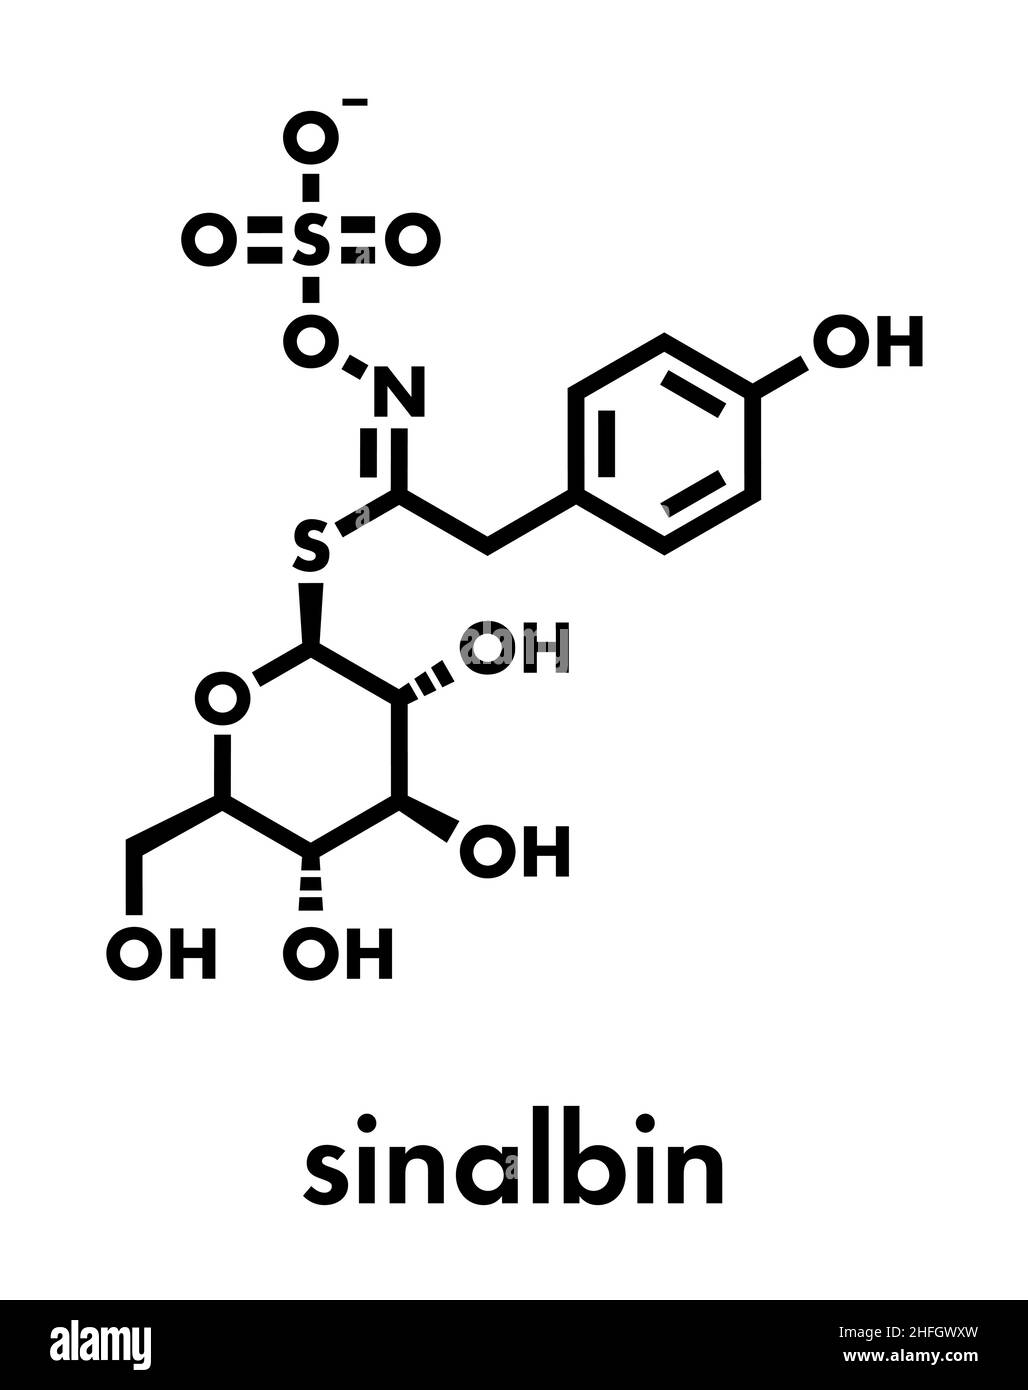 Sinalbin molécule en glucosinolates. Présents dans les graines de moutarde blanche (Sinapis alba). Formule topologique. Illustration de Vecteur